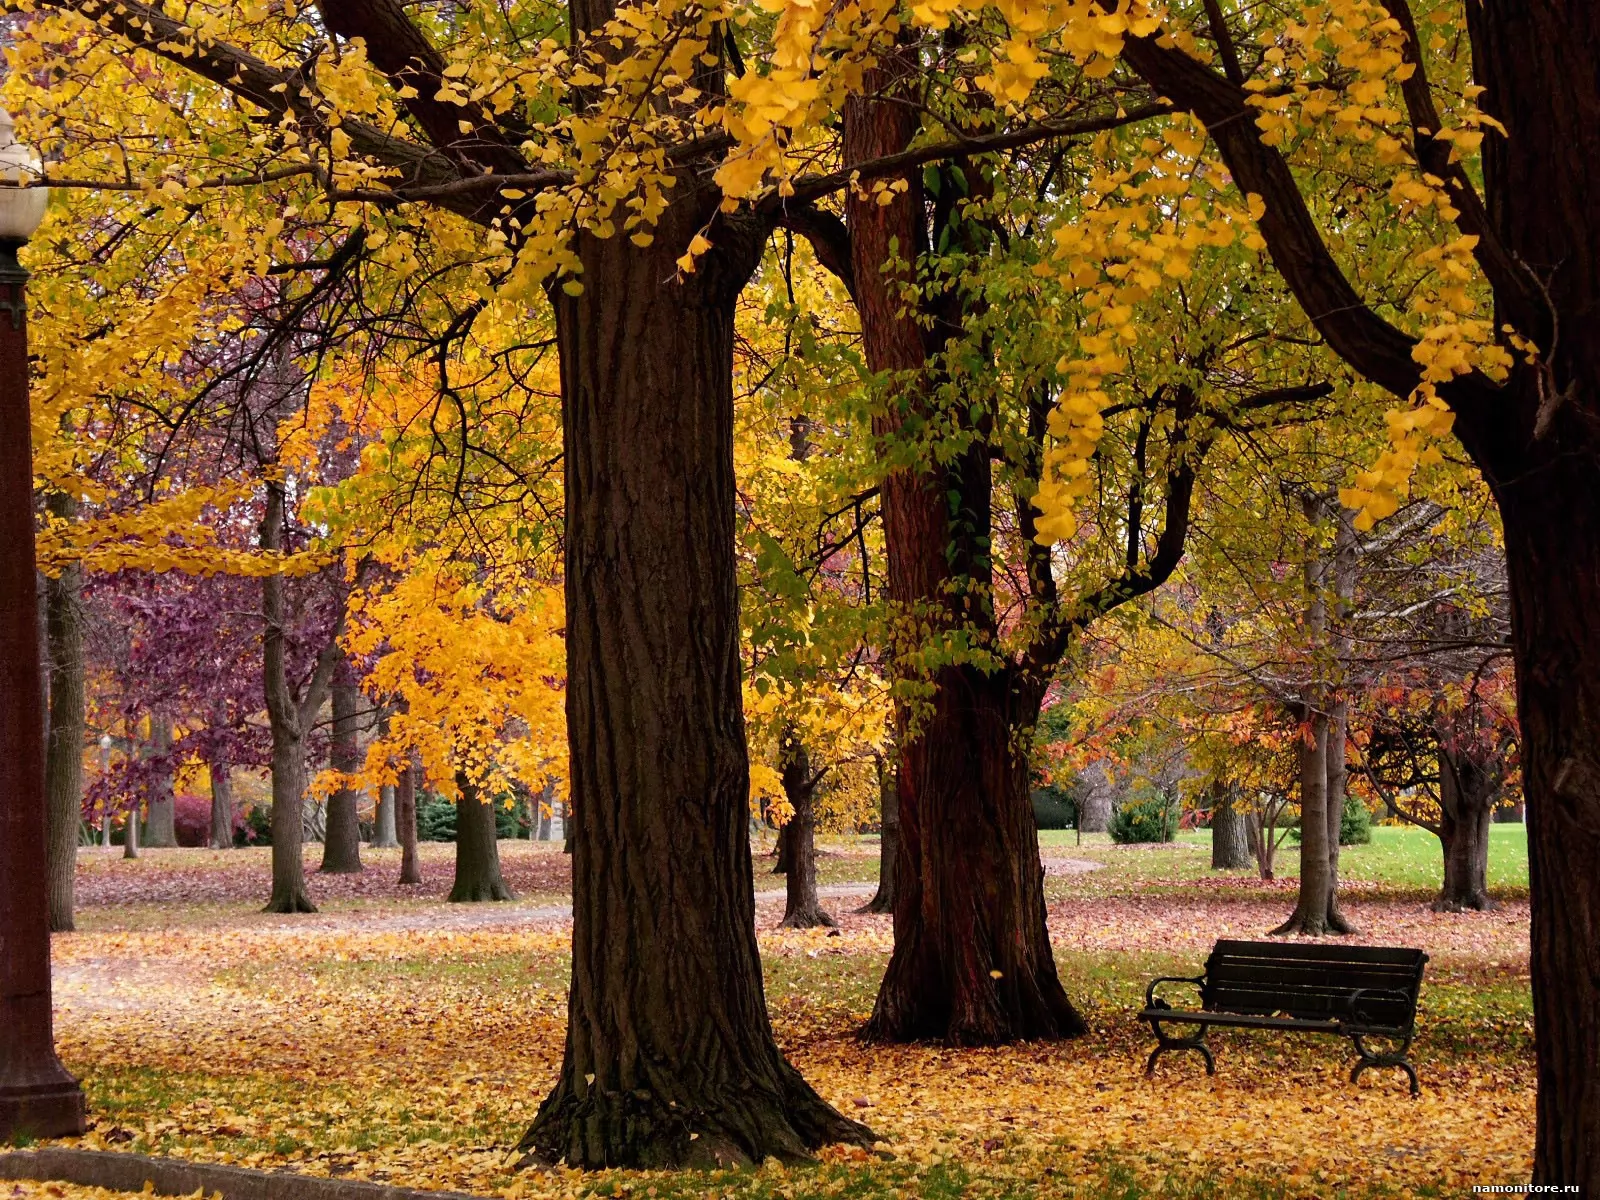 В парк пришла осень. Осень в парке. Парк осенью. Осенний парк фото. Осенний кленовый парк.